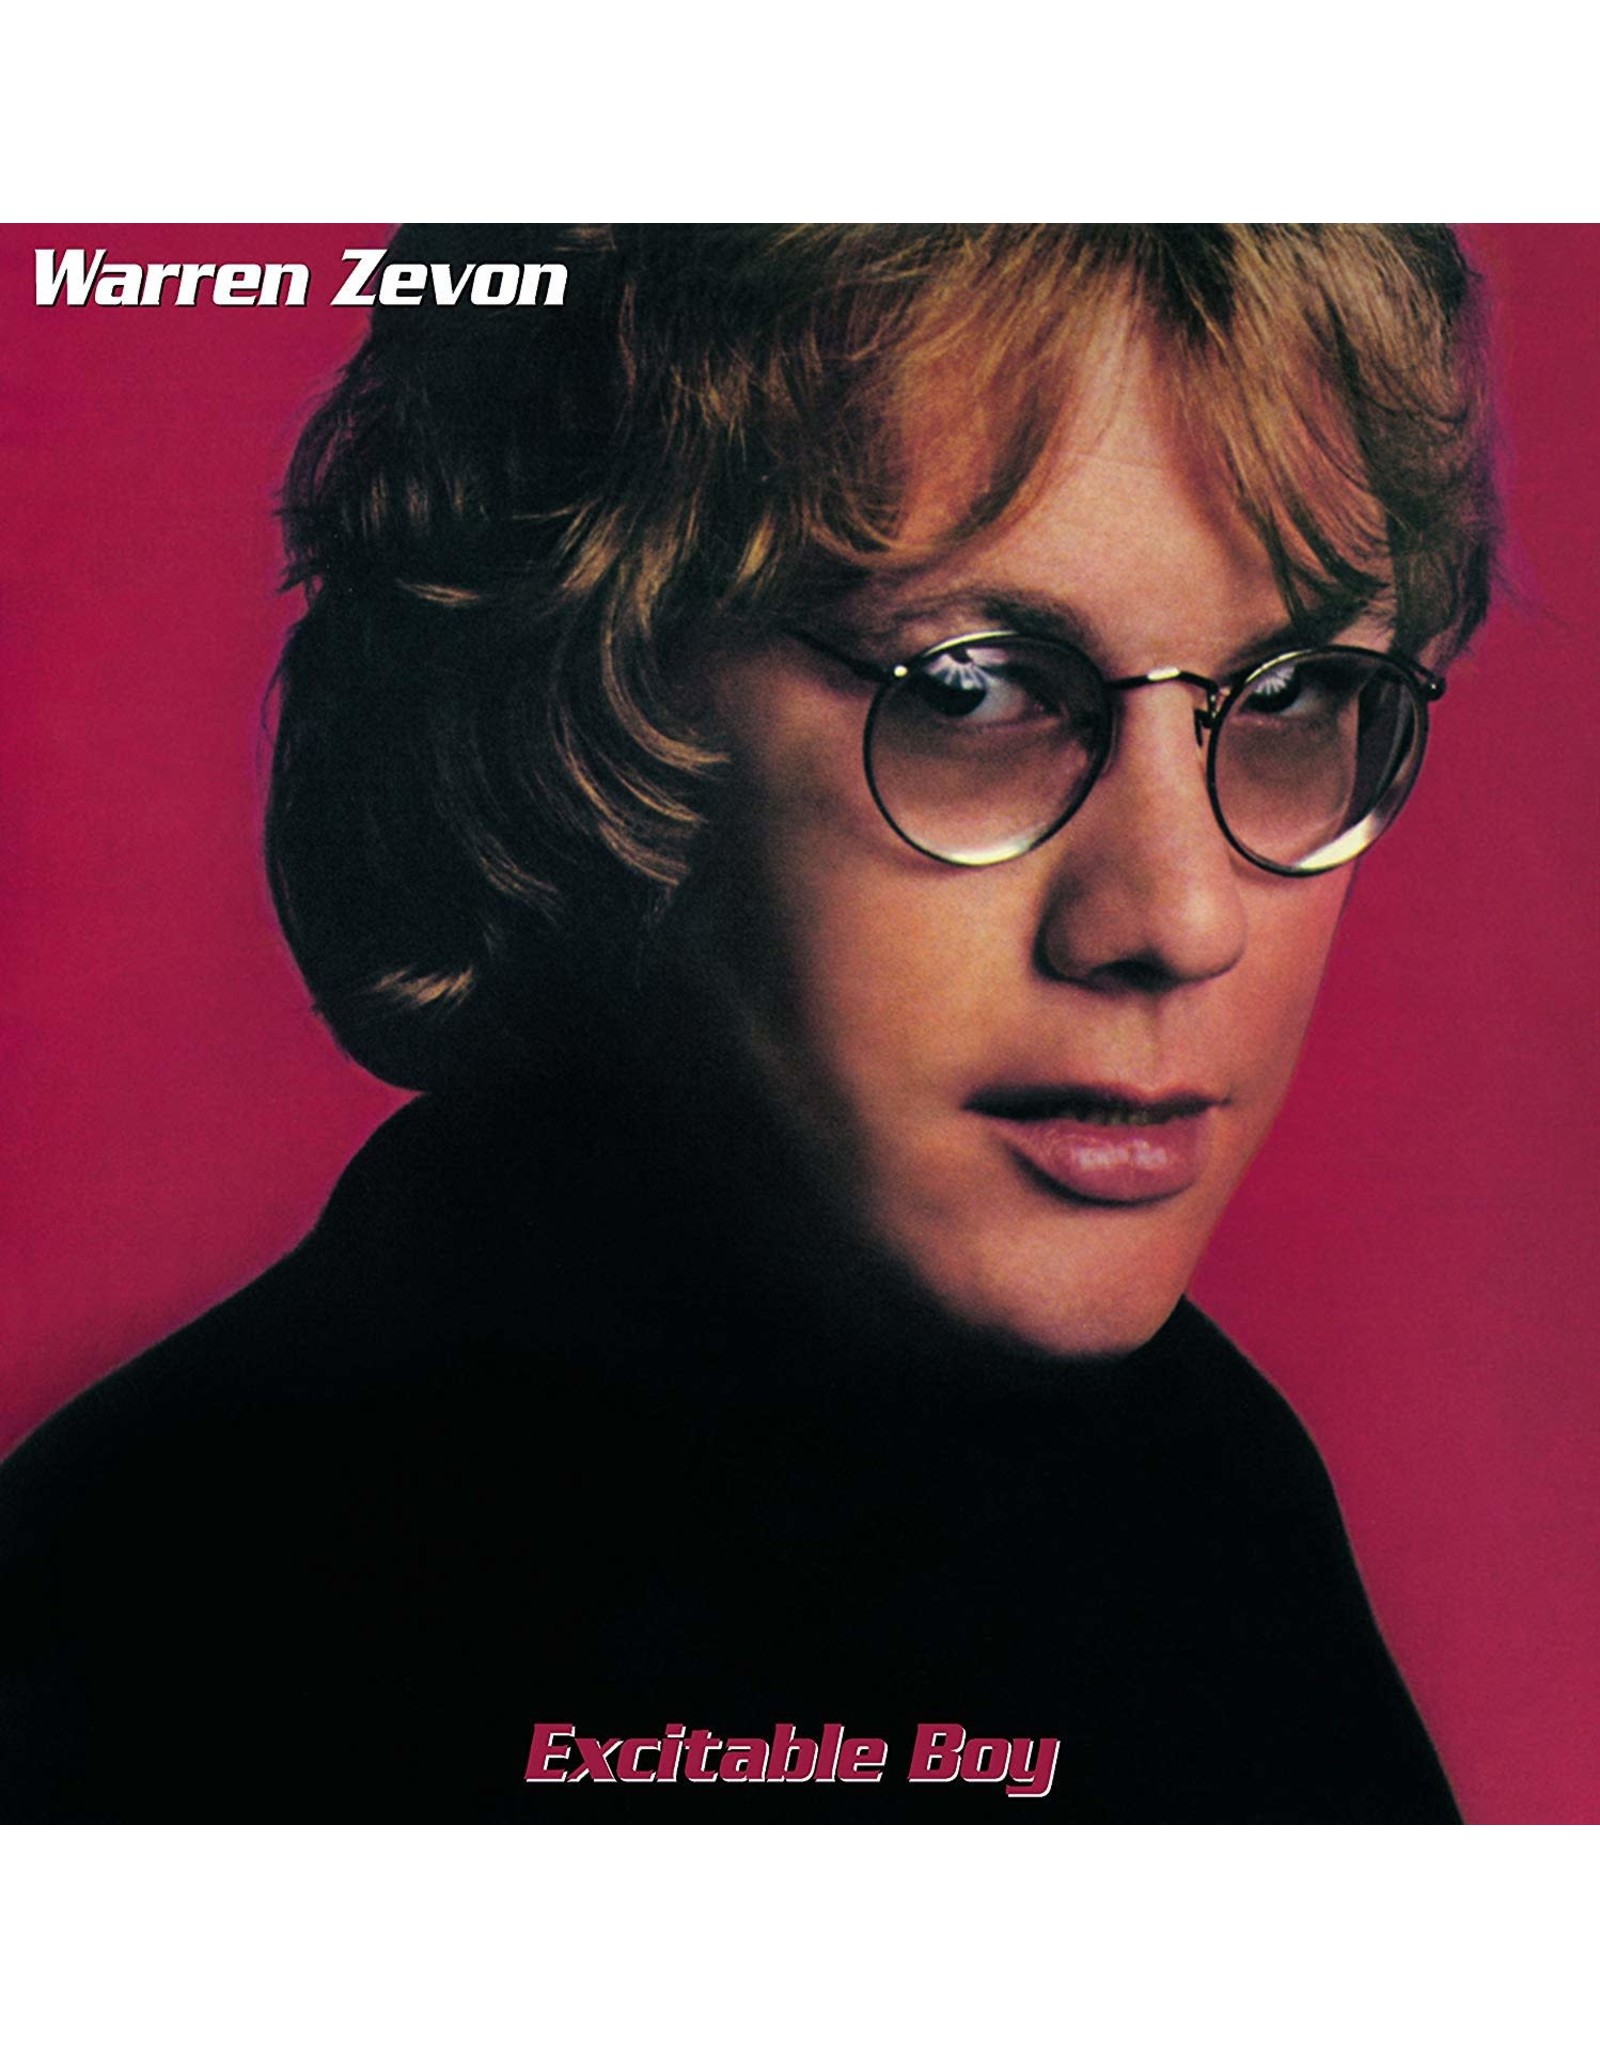 Warren Zevon - Excitable Boy (Exclusive Glow In The Dark Vinyl)